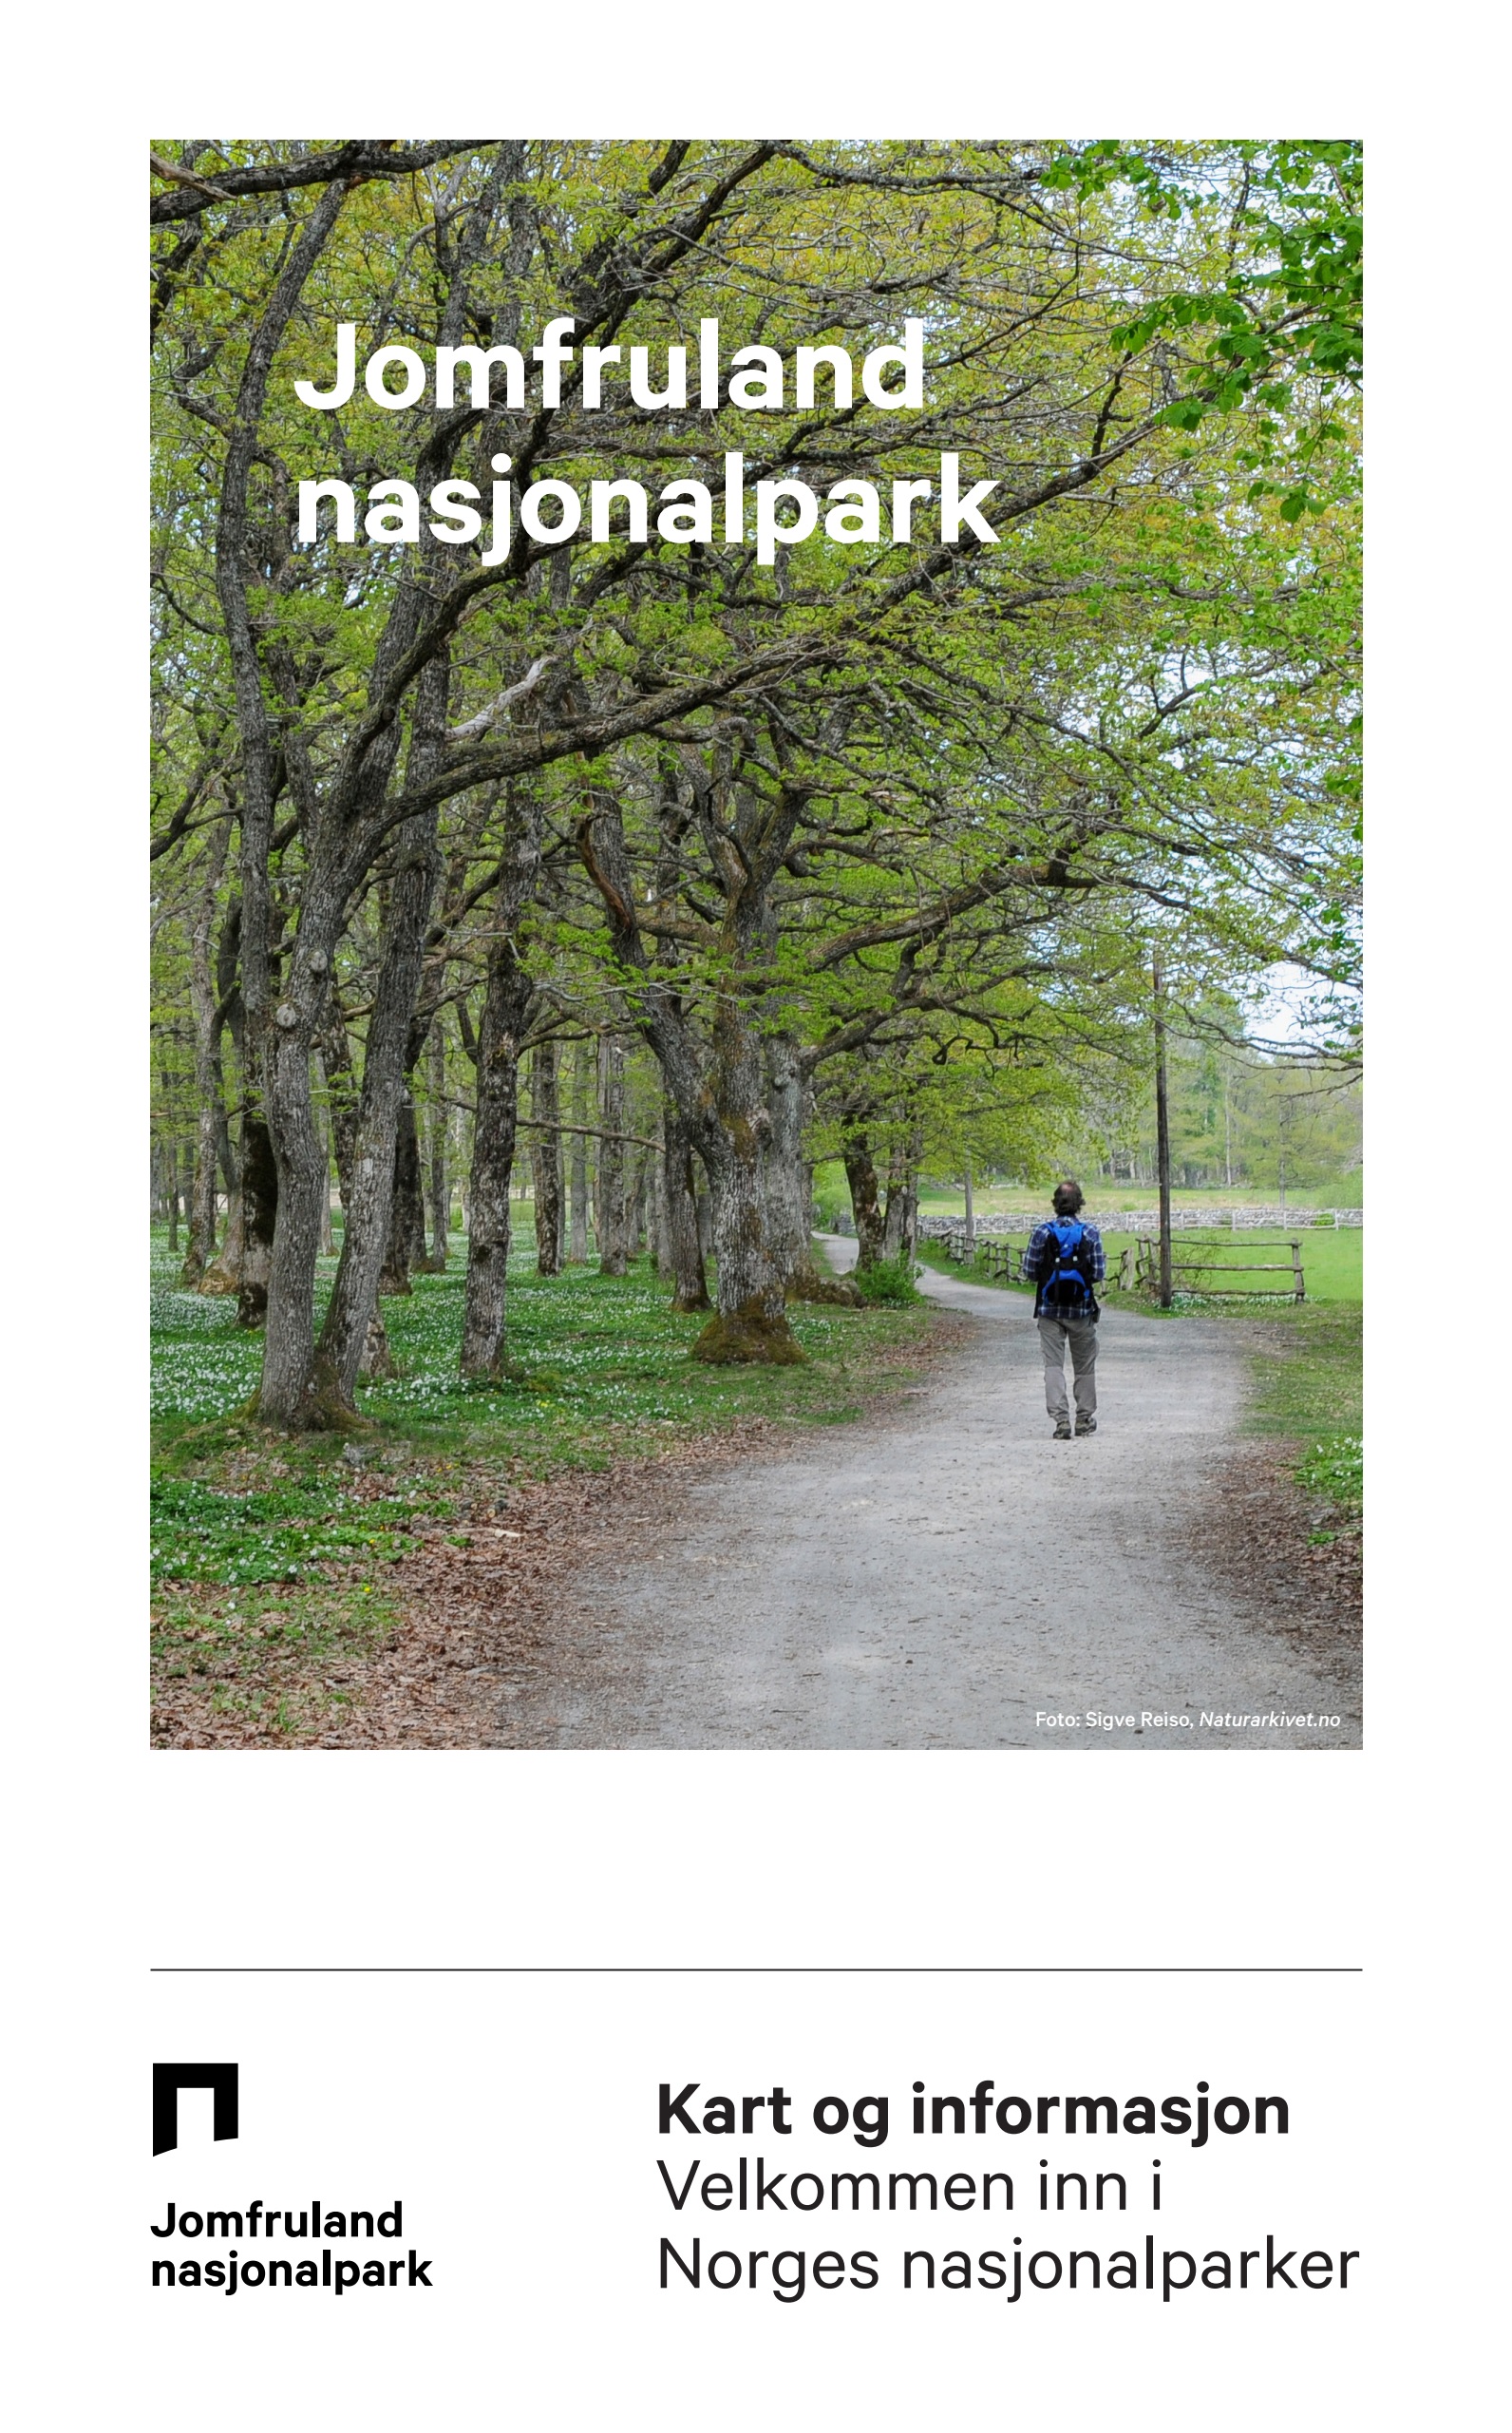 Forsiden av informasjonsbrosjyren for Jomfruland nasjonalpark